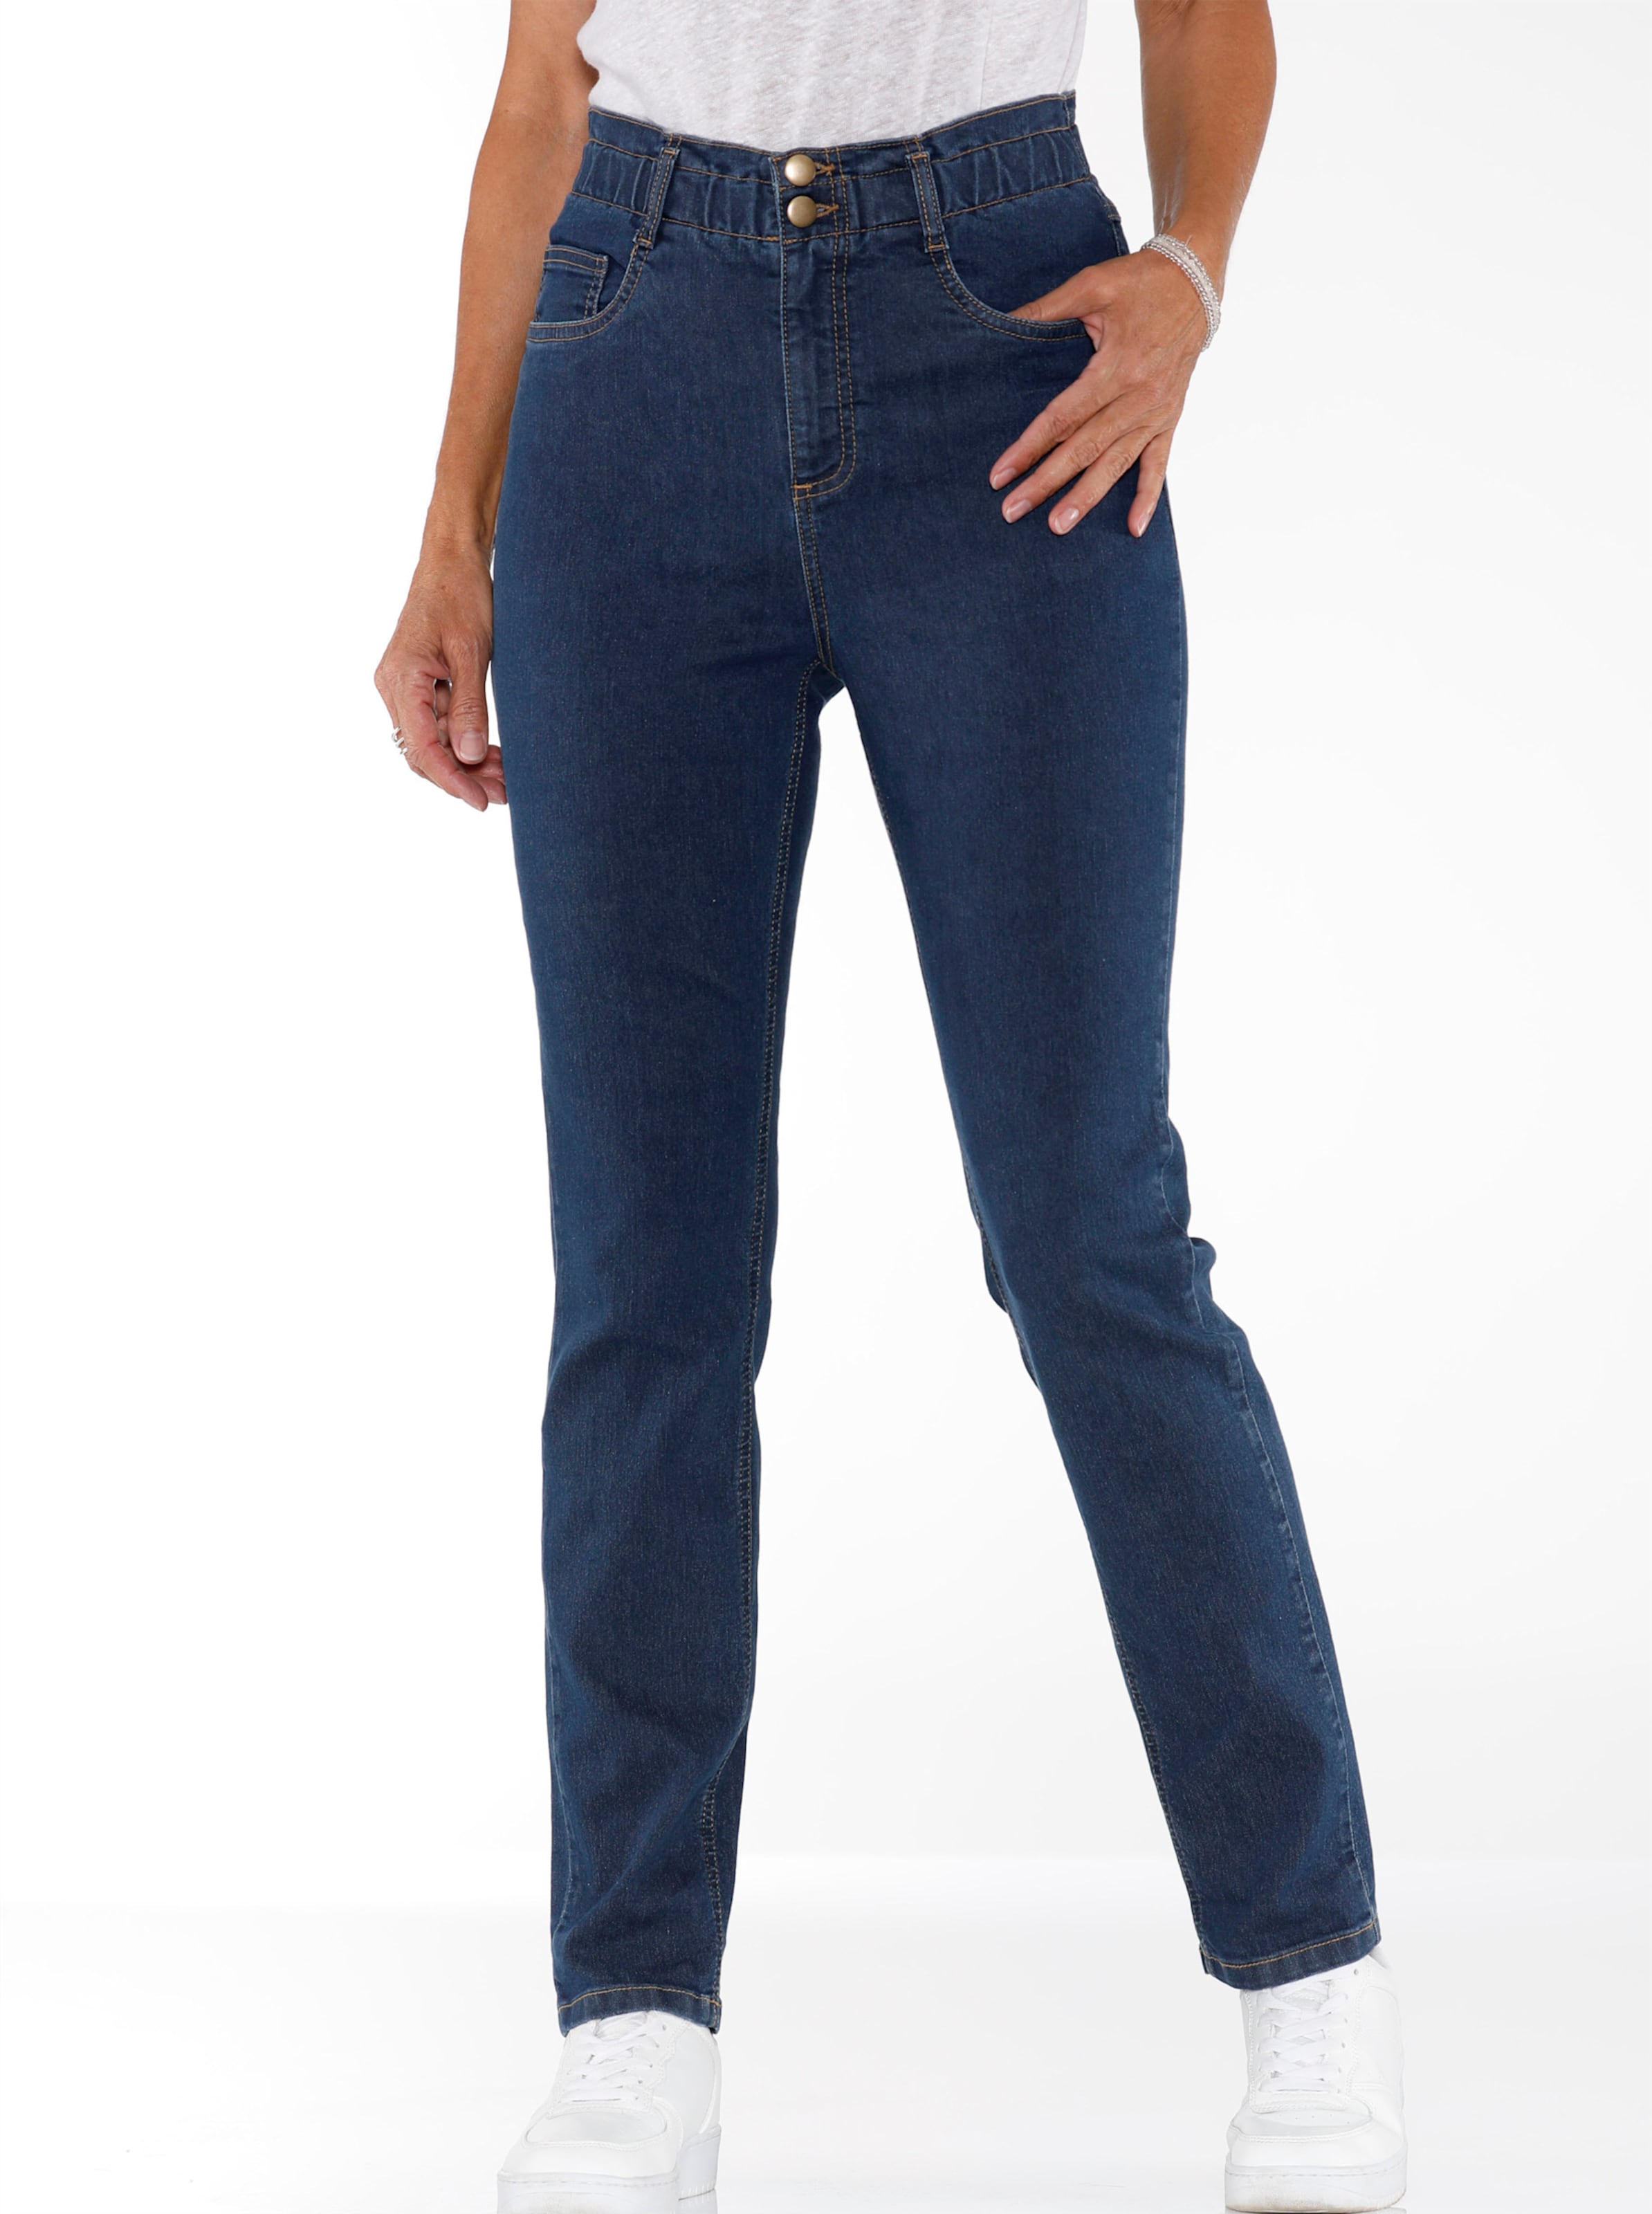 Witt Damen Jeans im aktuellen Paperbag-Schnitt, blue-stone-washed